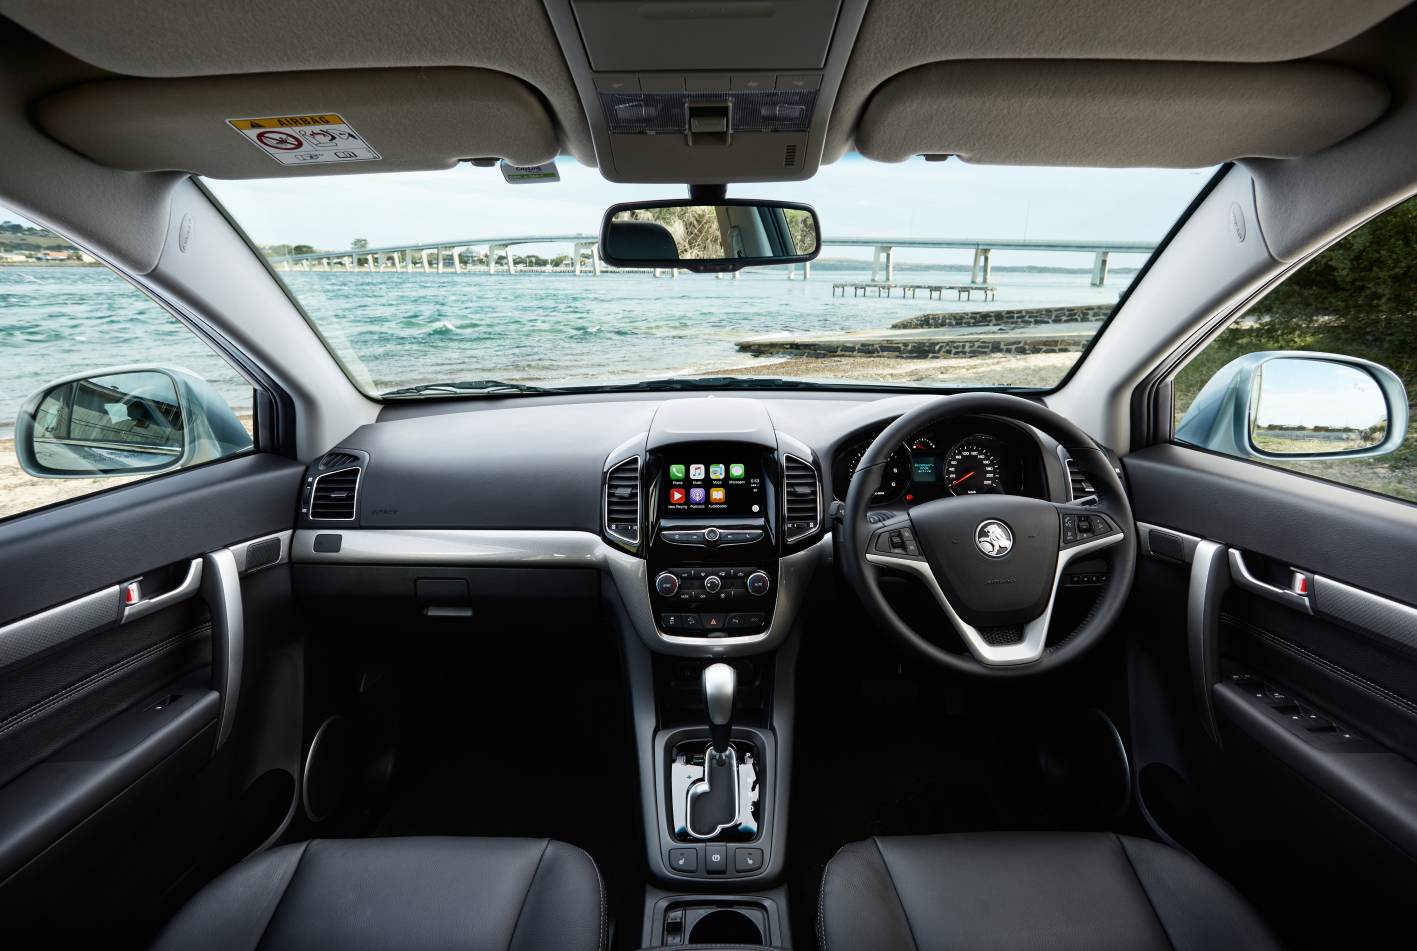 2016 Holden Captiva Interior Forcegt Com